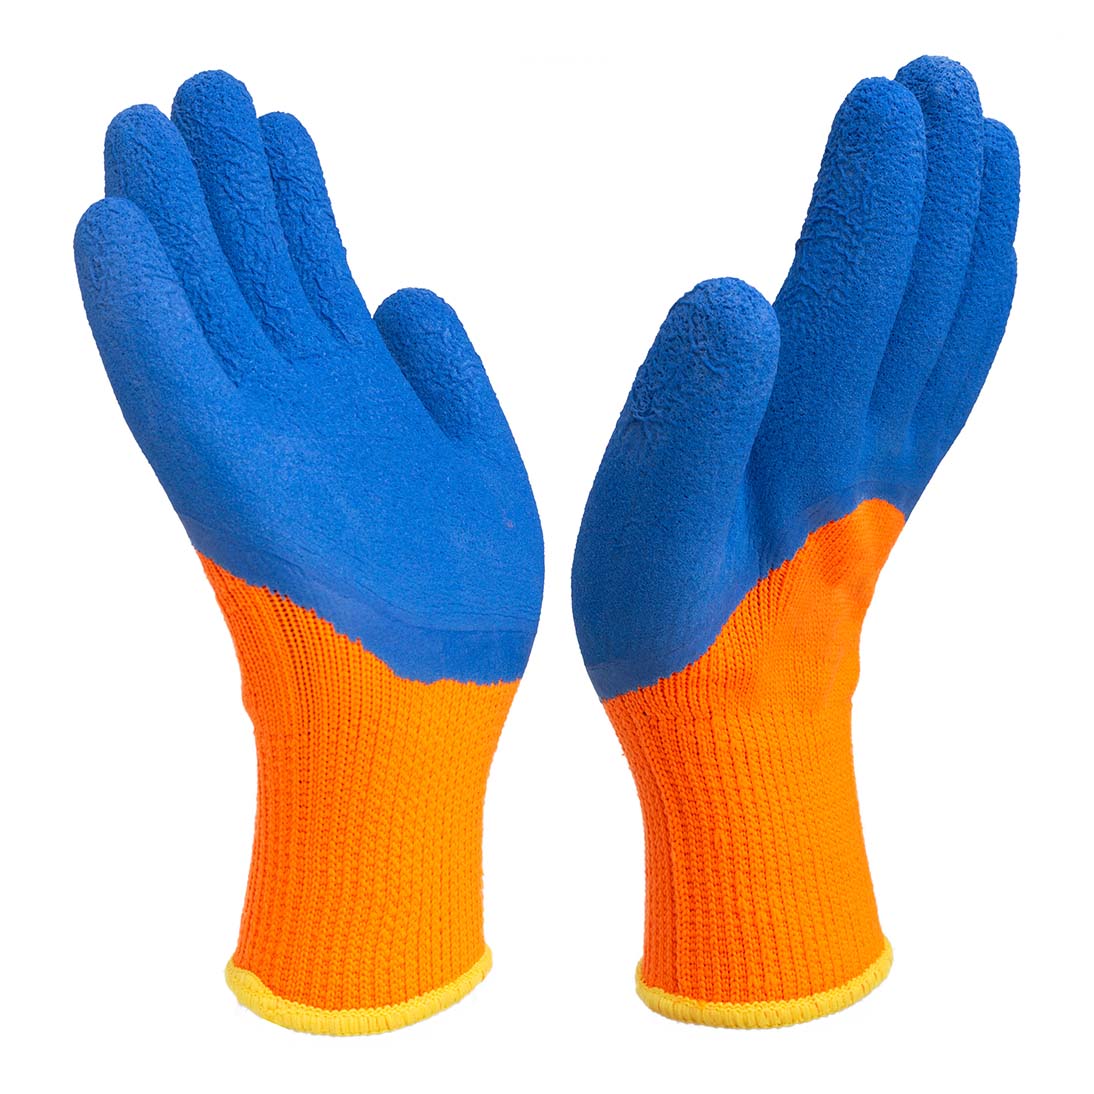 7G latex half coated gloves | 7G foam half coated gloves | Half coated gloves